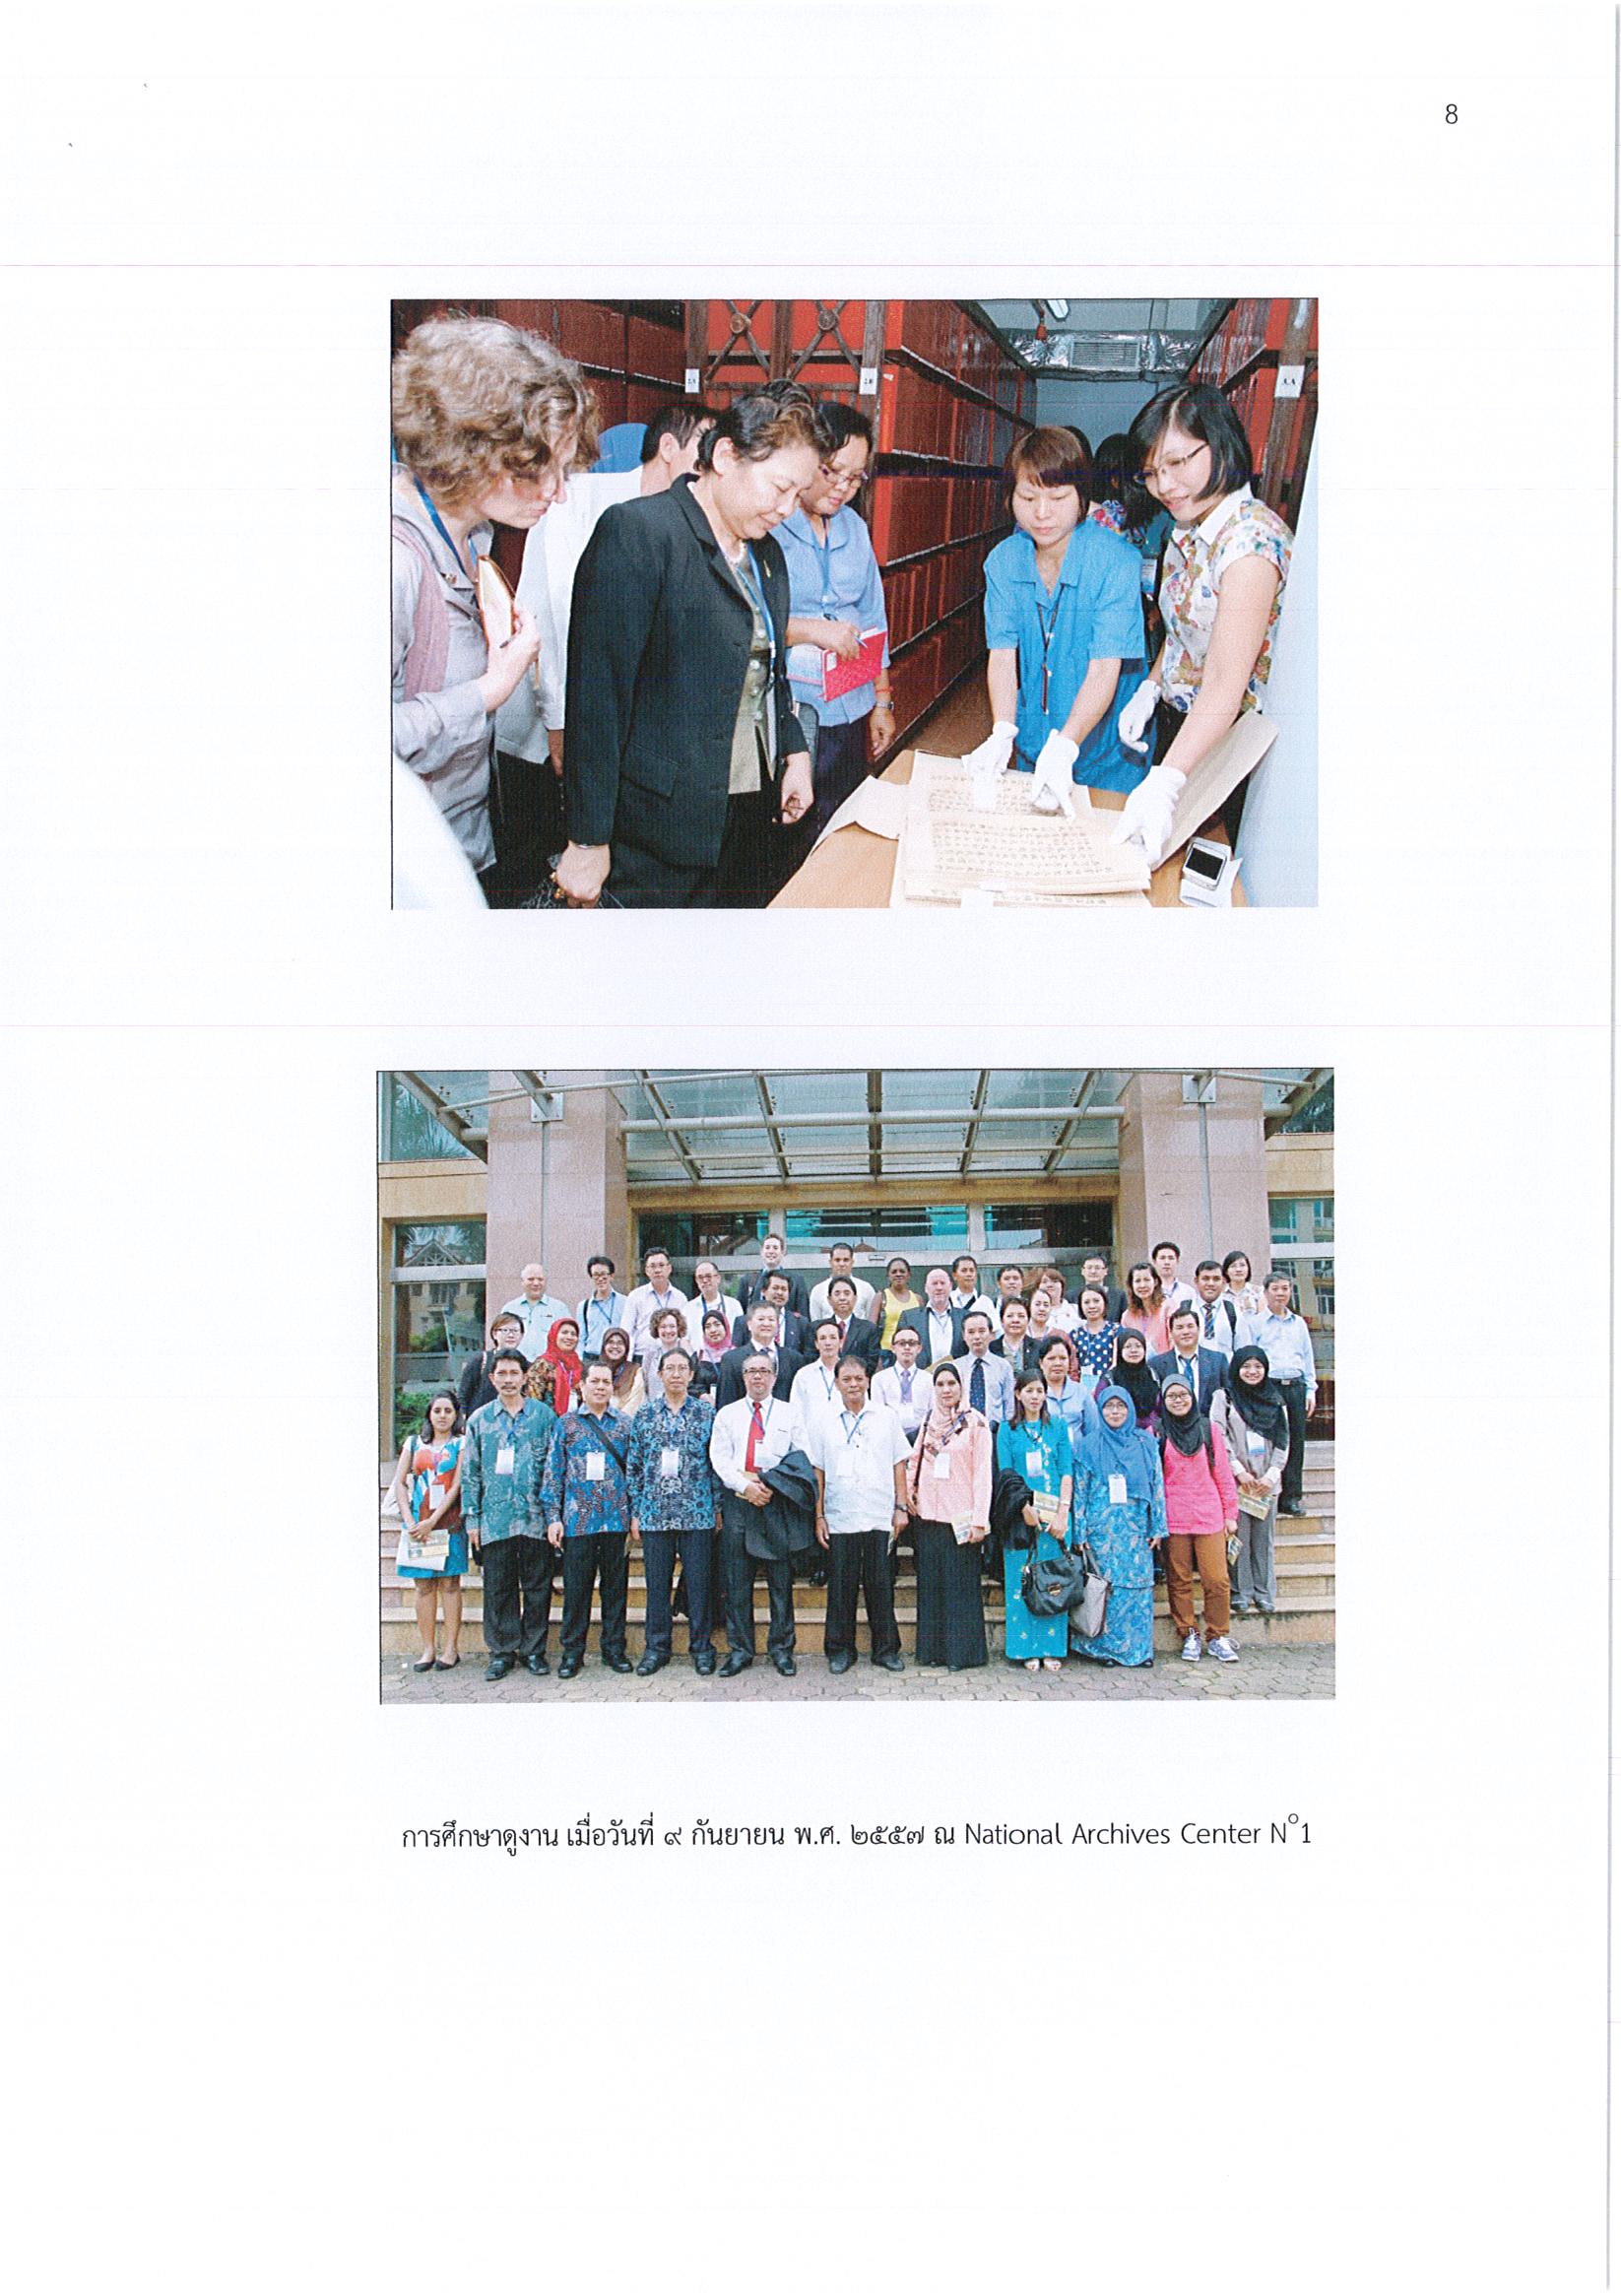 รายงานการเดินทางไปราชการ ณ สาธารณรัฐสังคมนิยมเวียดนาม ระหว่างวันที่ 8 – 12 กันยายน 2557 โครงการเข้าร่วมประชุมและสัมมนาทางวิชาการของสภาจดหมายเหตุแห่งชาติระหว่างประเทศประจำภาคพื้นเอเชียตะวันออกเฉียงใต้